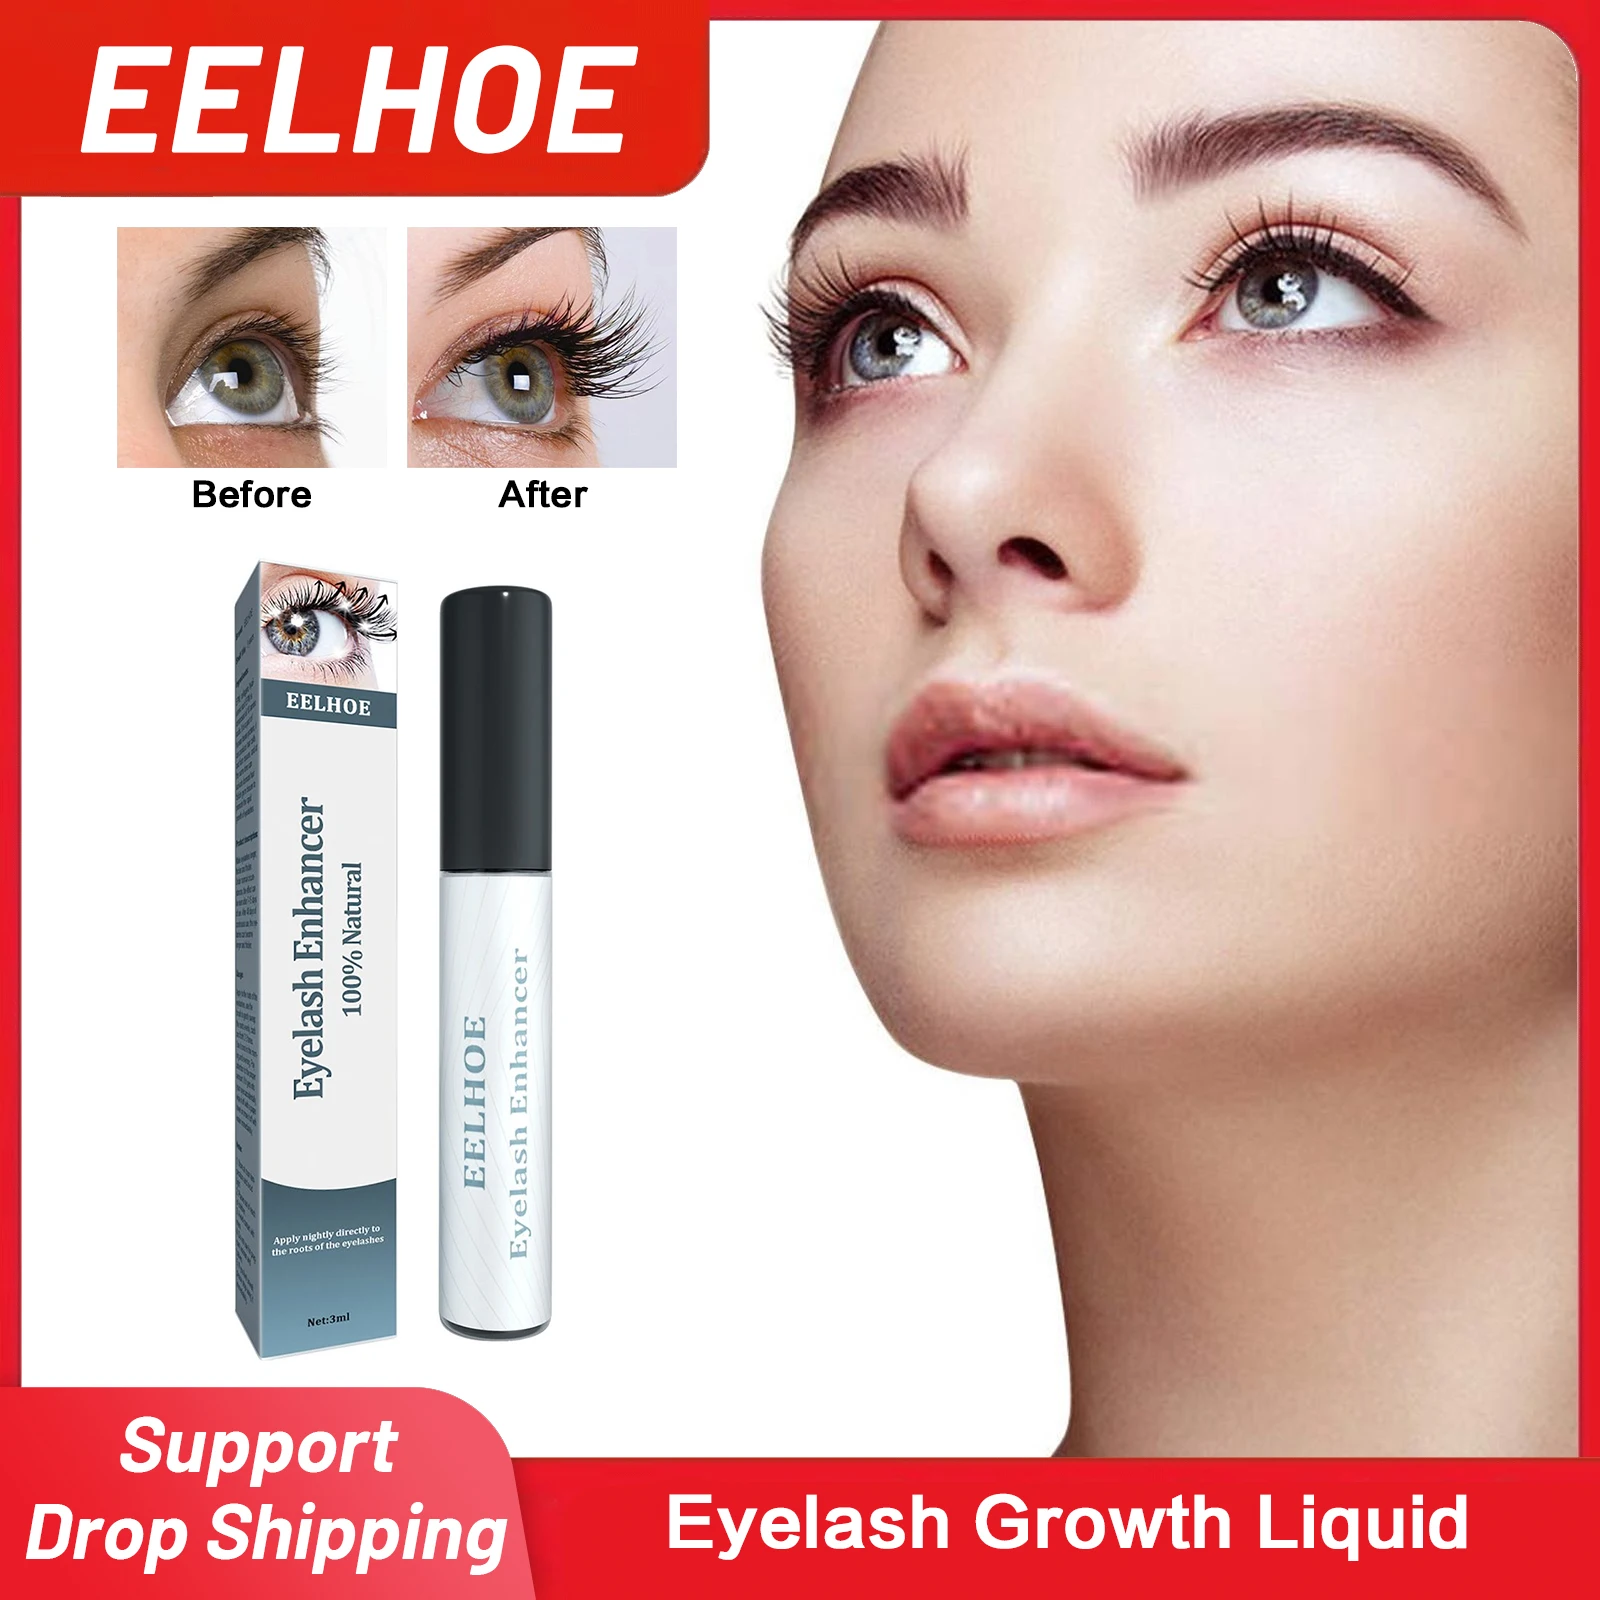 

Eyelash Growth Liquid Lash Lift Lengthening Longer Fuller Thicker Lashes Eyelashes Enhancer Nourishing Mascara Eyebrow Essence